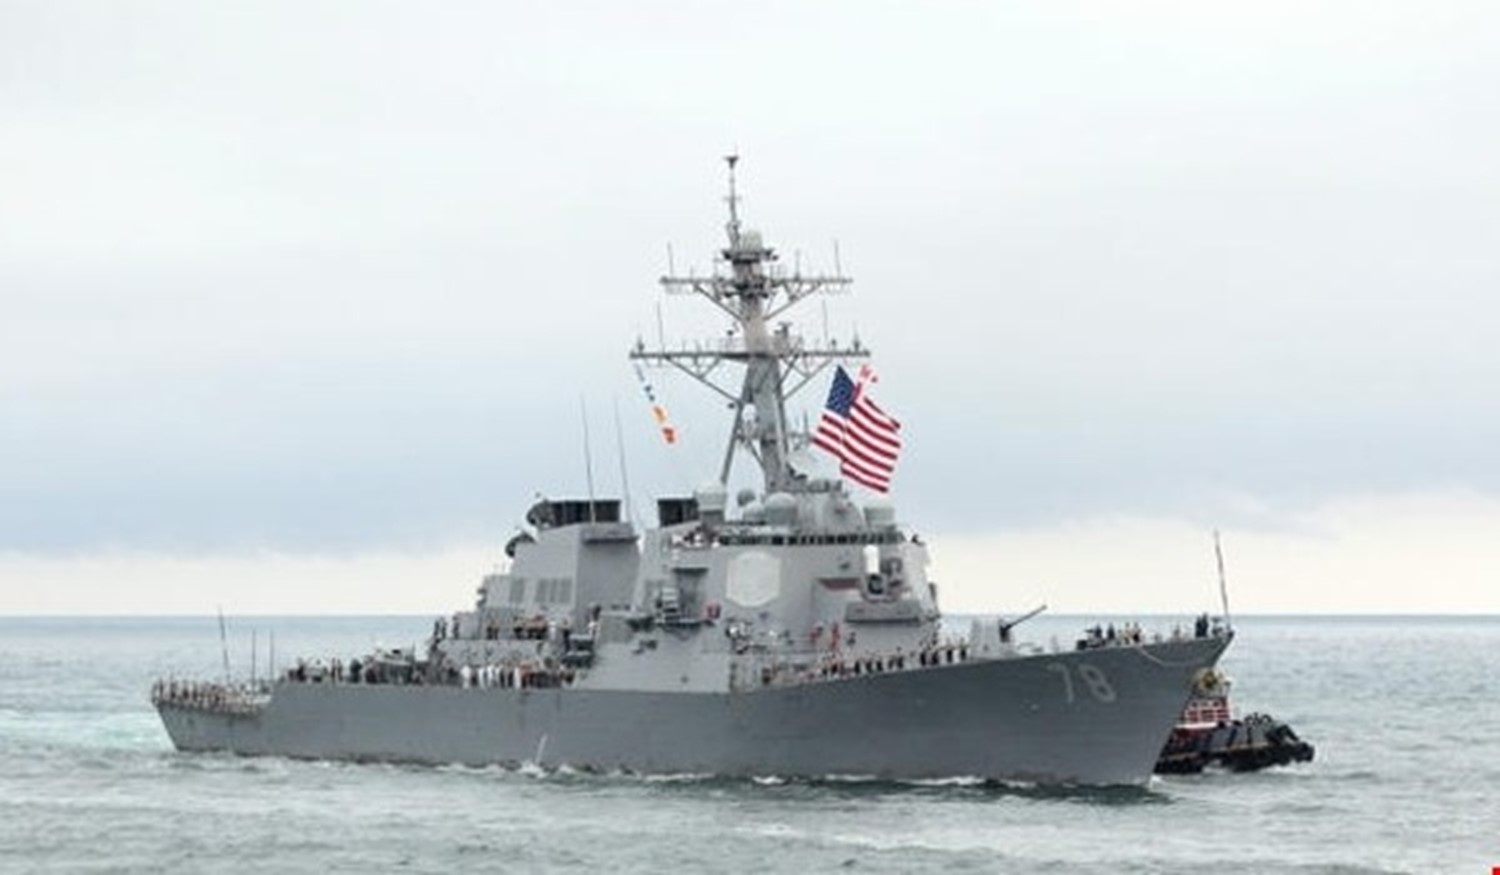 أمريكيون يتهمون "إسرائيل" بمهاجمة سفينة تابعة لقواتهم البحرية 